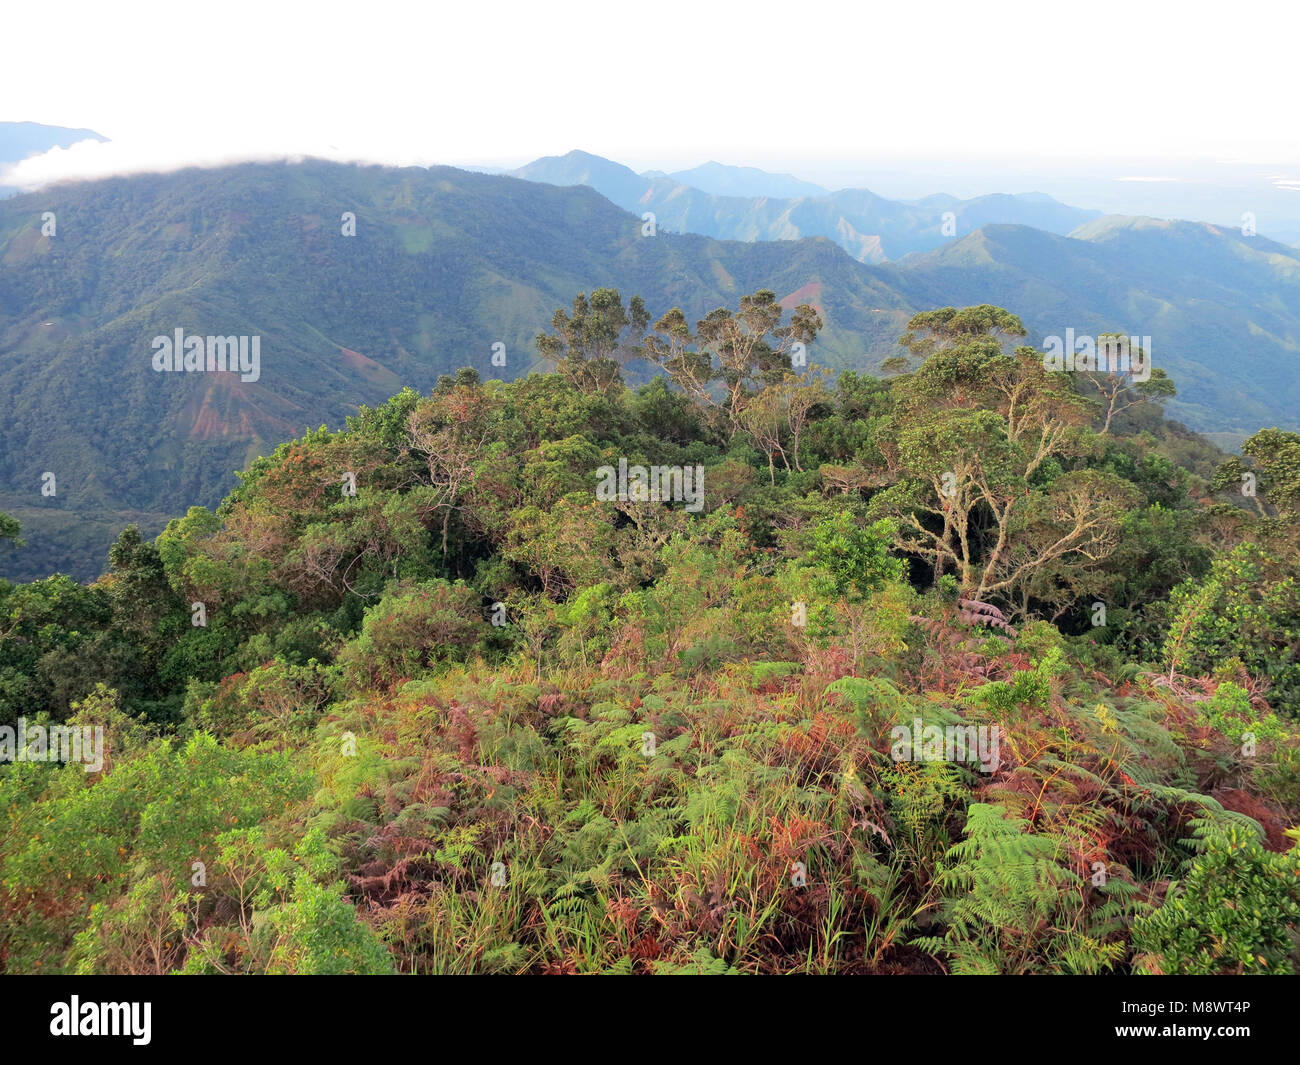 Nevelwoud / cloud forest; Santa Marta montagne, Sierra Nevada, Colombia Foto Stock